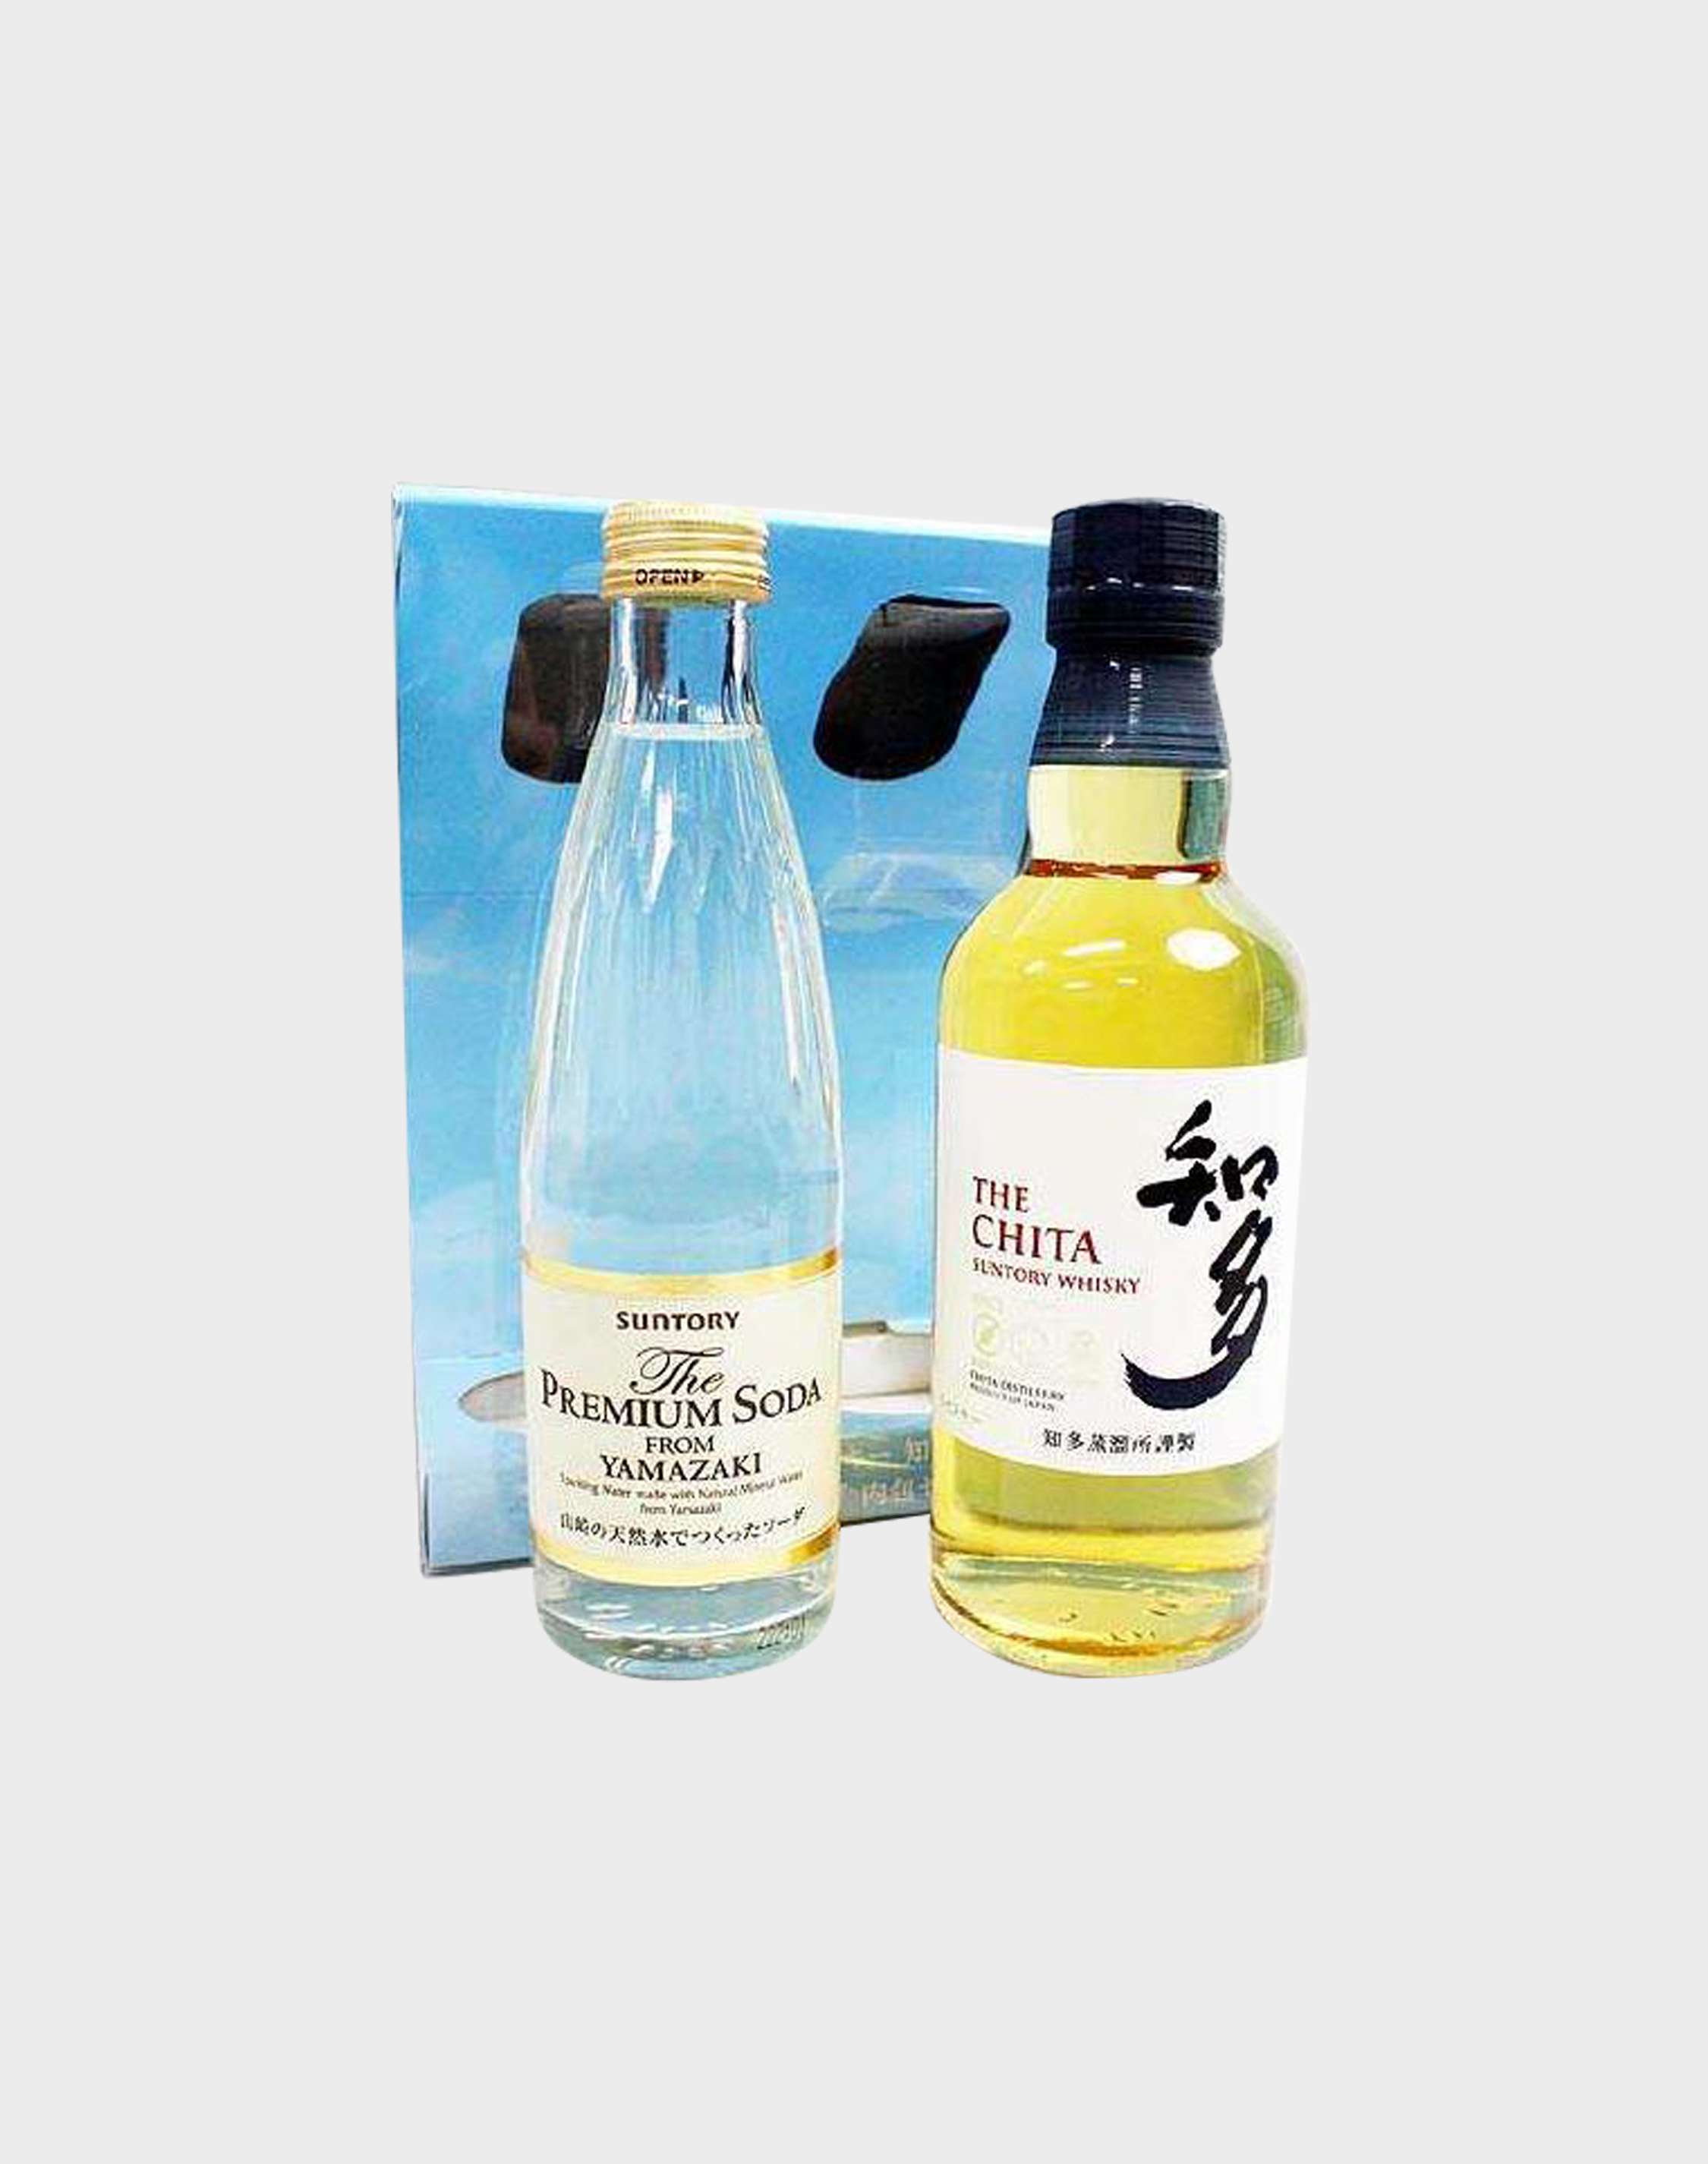 Suntory Chita Whisky with Yamazaki Premium Soda - dekantā